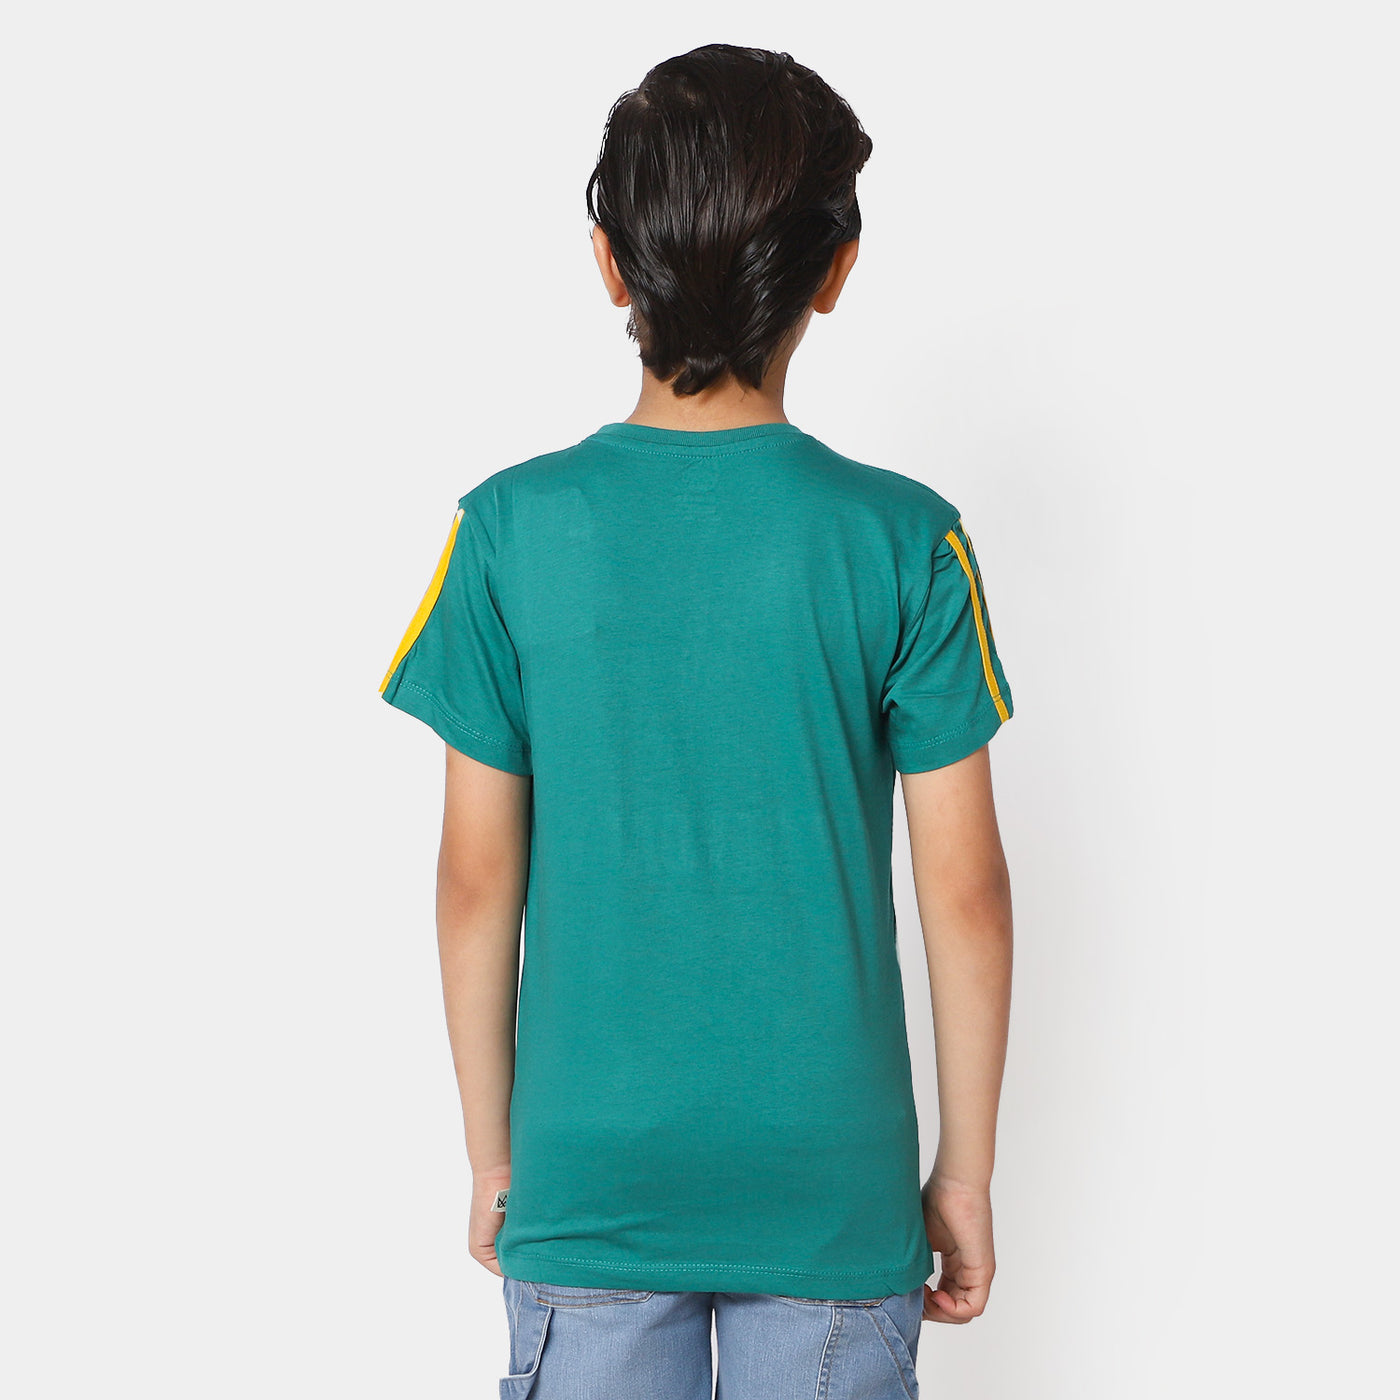 Boys Cotton T-Shirt Legendary - Teal Green